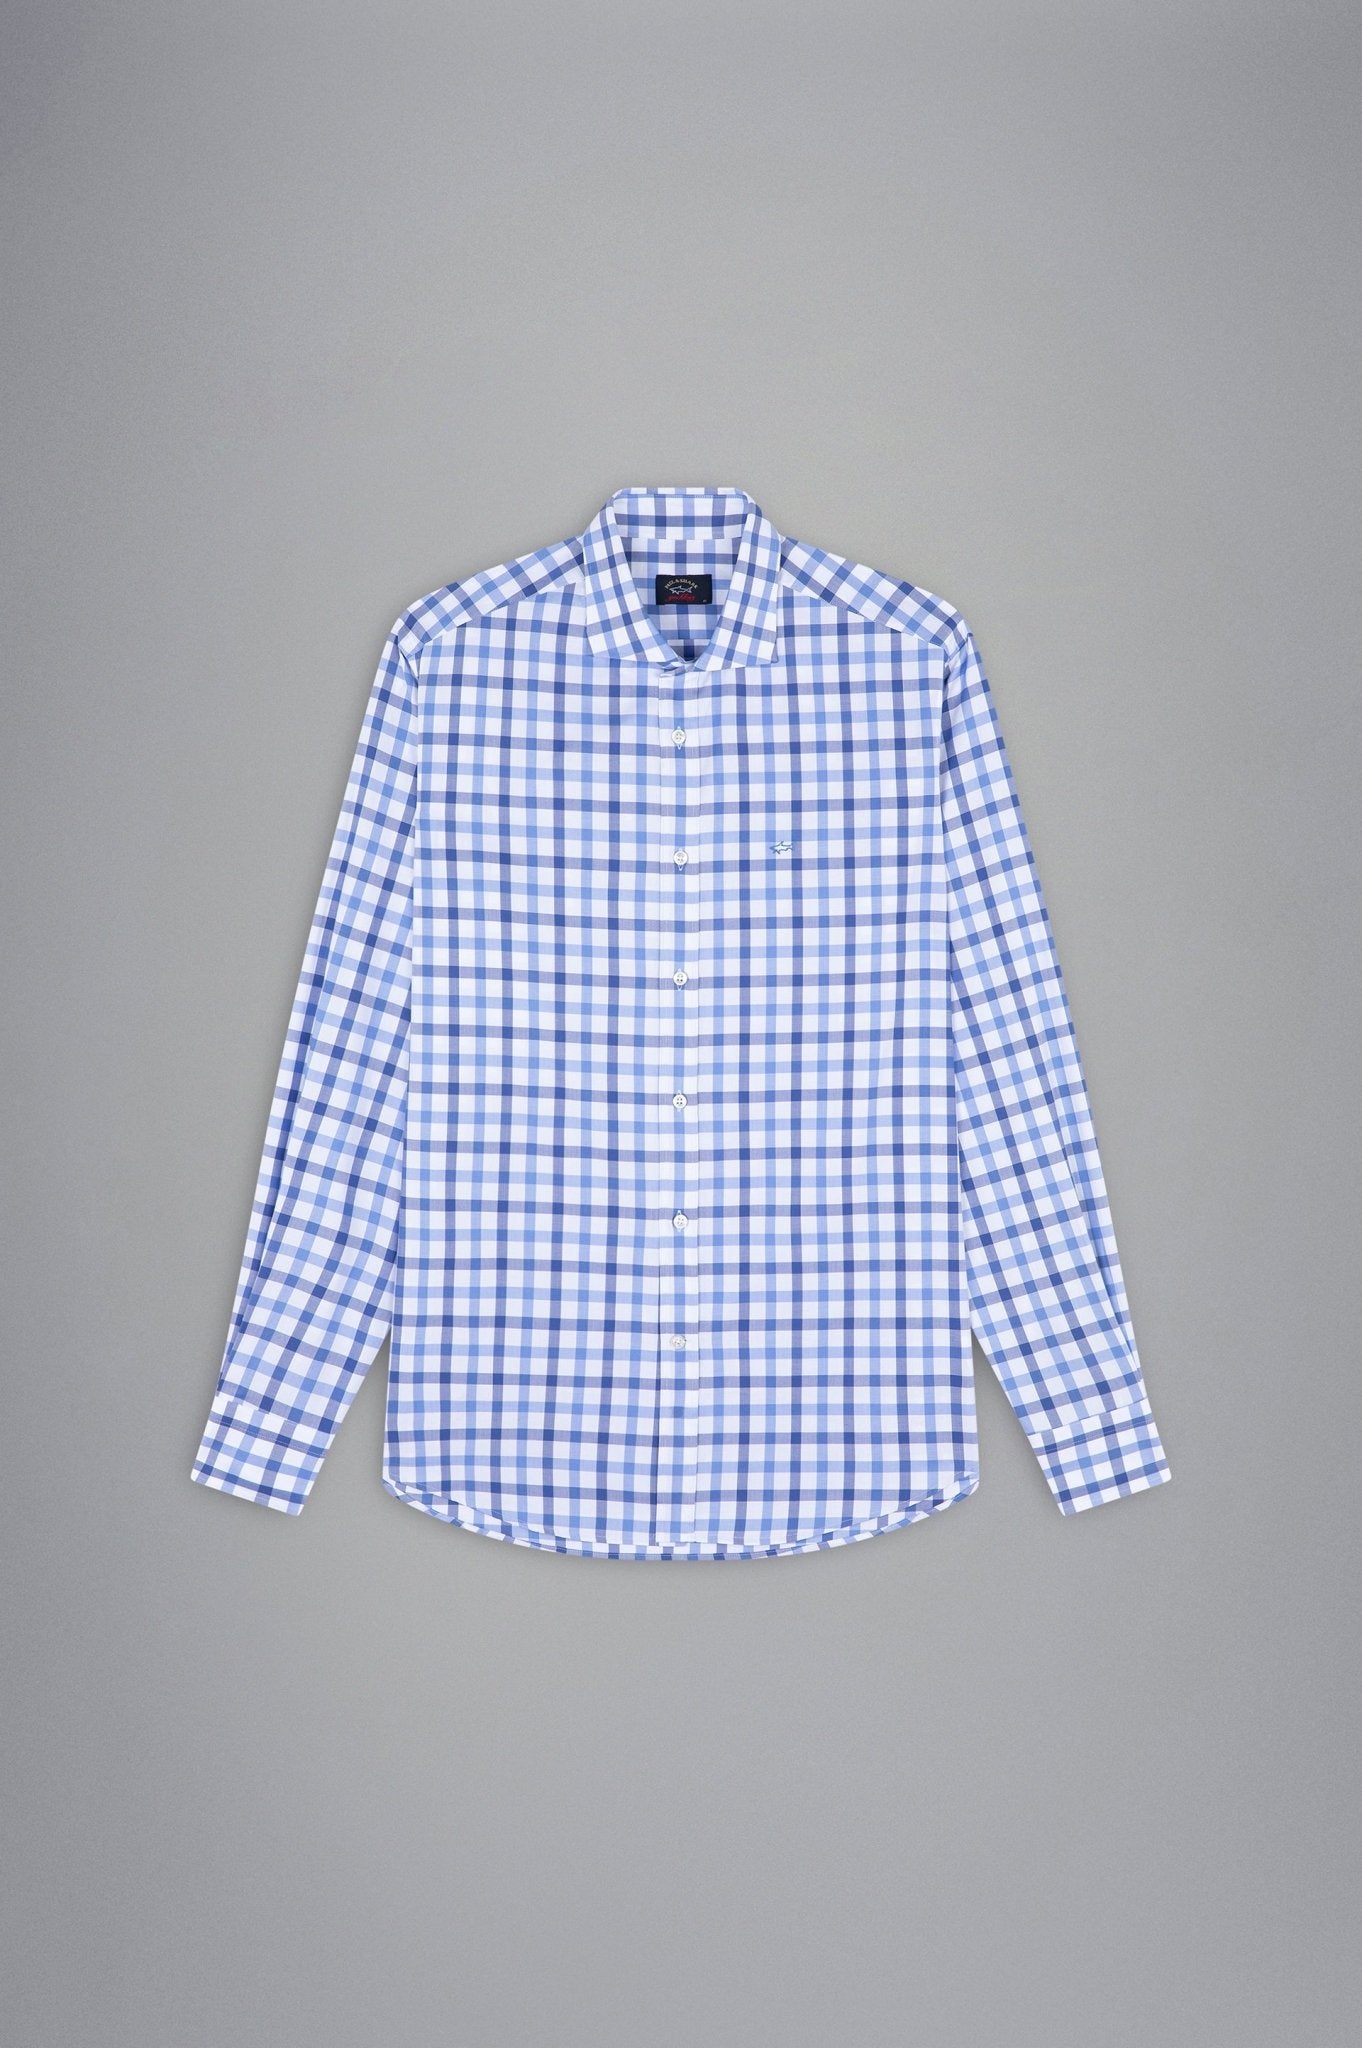 PAUL&SHARK X Long Sleeve Twill Check Shirt NAVY/WHITE/BLUE - Henry BucksShirts38AW240045 - NVWHBLU - 40